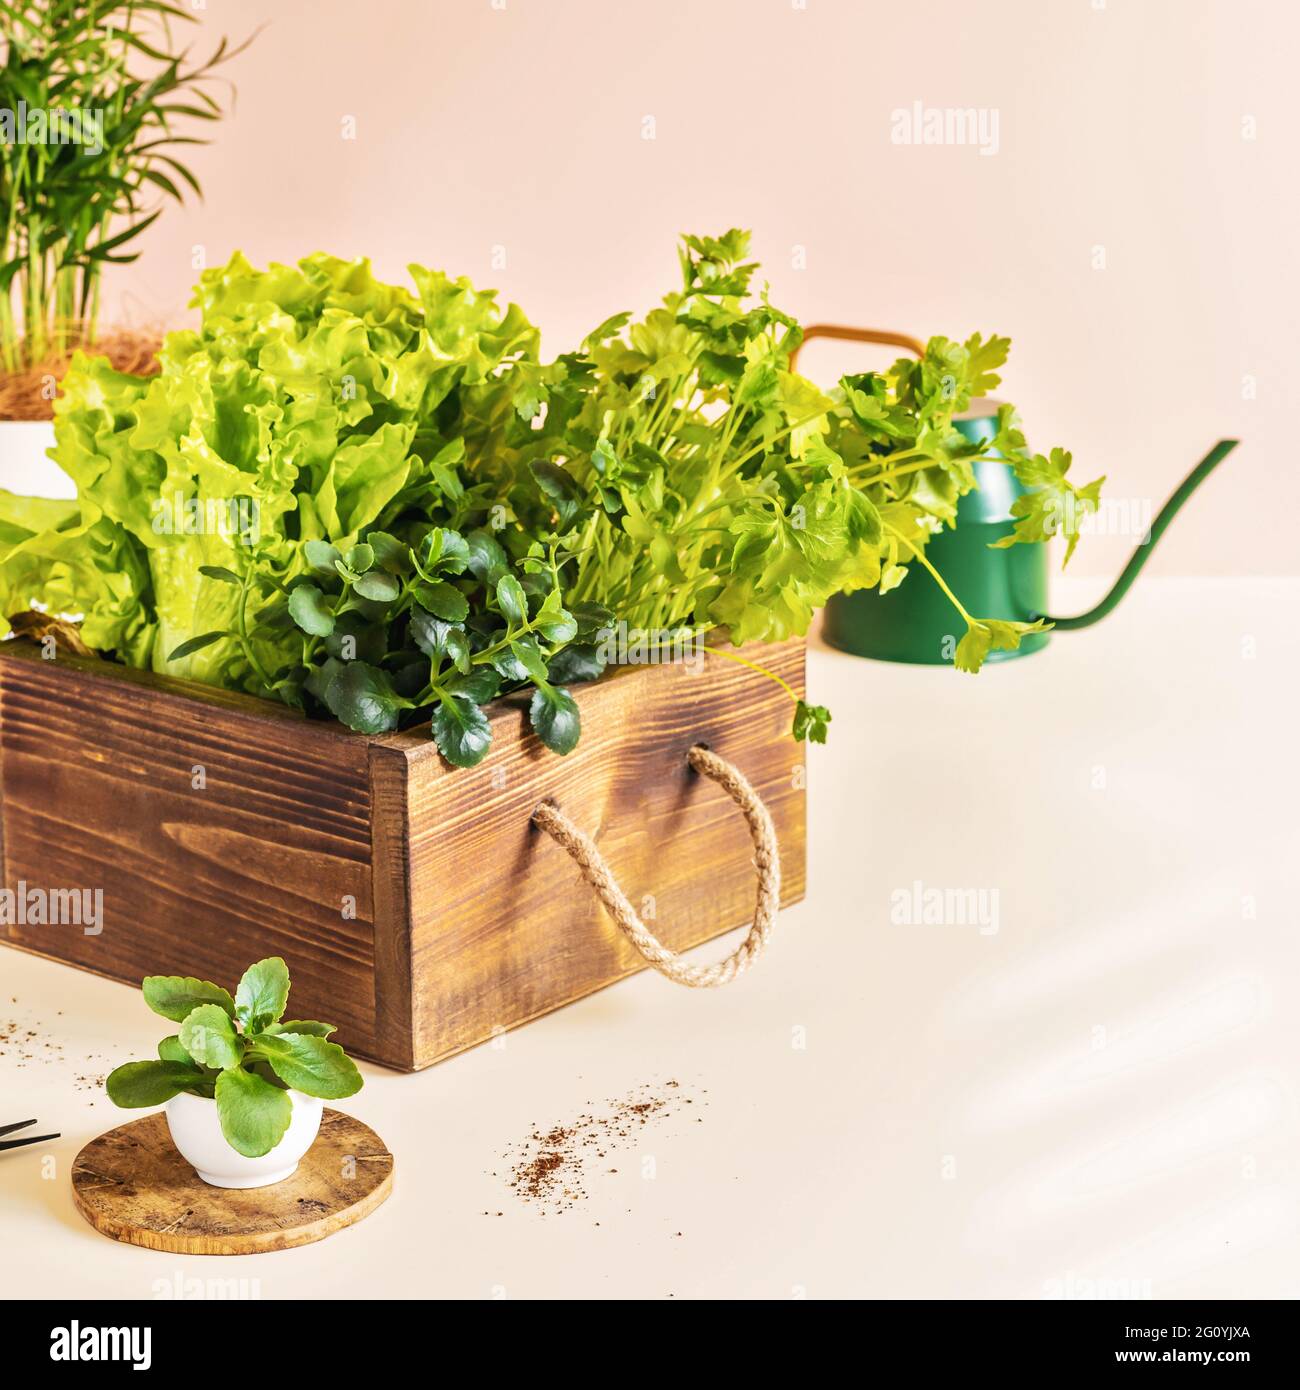 La culture à la maison de verdure saine pour la nourriture. Composition de jardinage à la maison avec des herbes utiles et de la laitue dans une boîte en bois, des plantules et arrosoir Banque D'Images